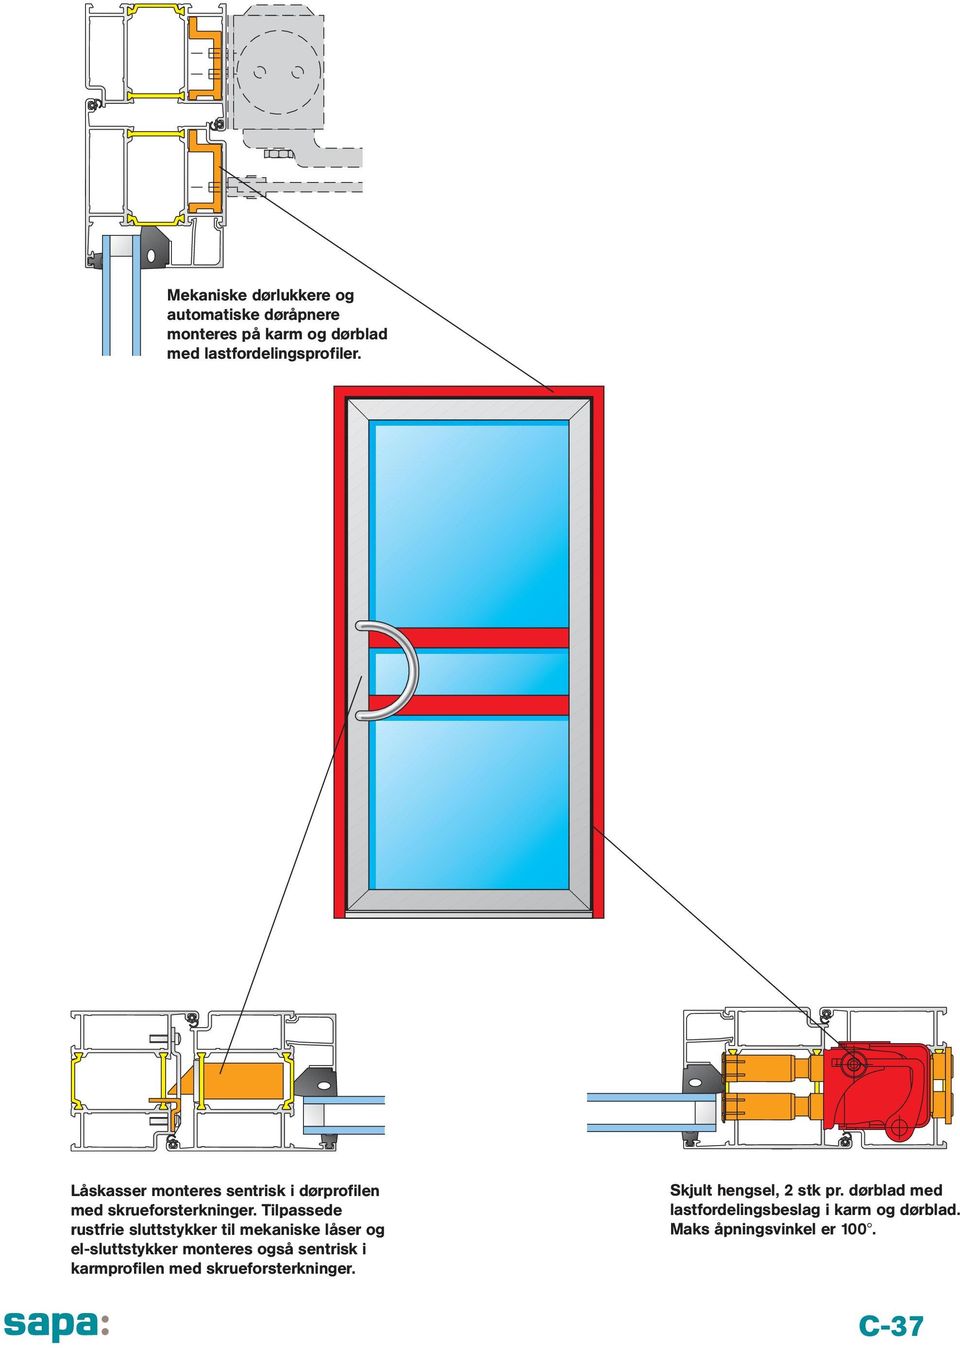 Tilpassede rustfrie sluttstykker til mekaniske låser og el-sluttstykker monteres også sentrisk i